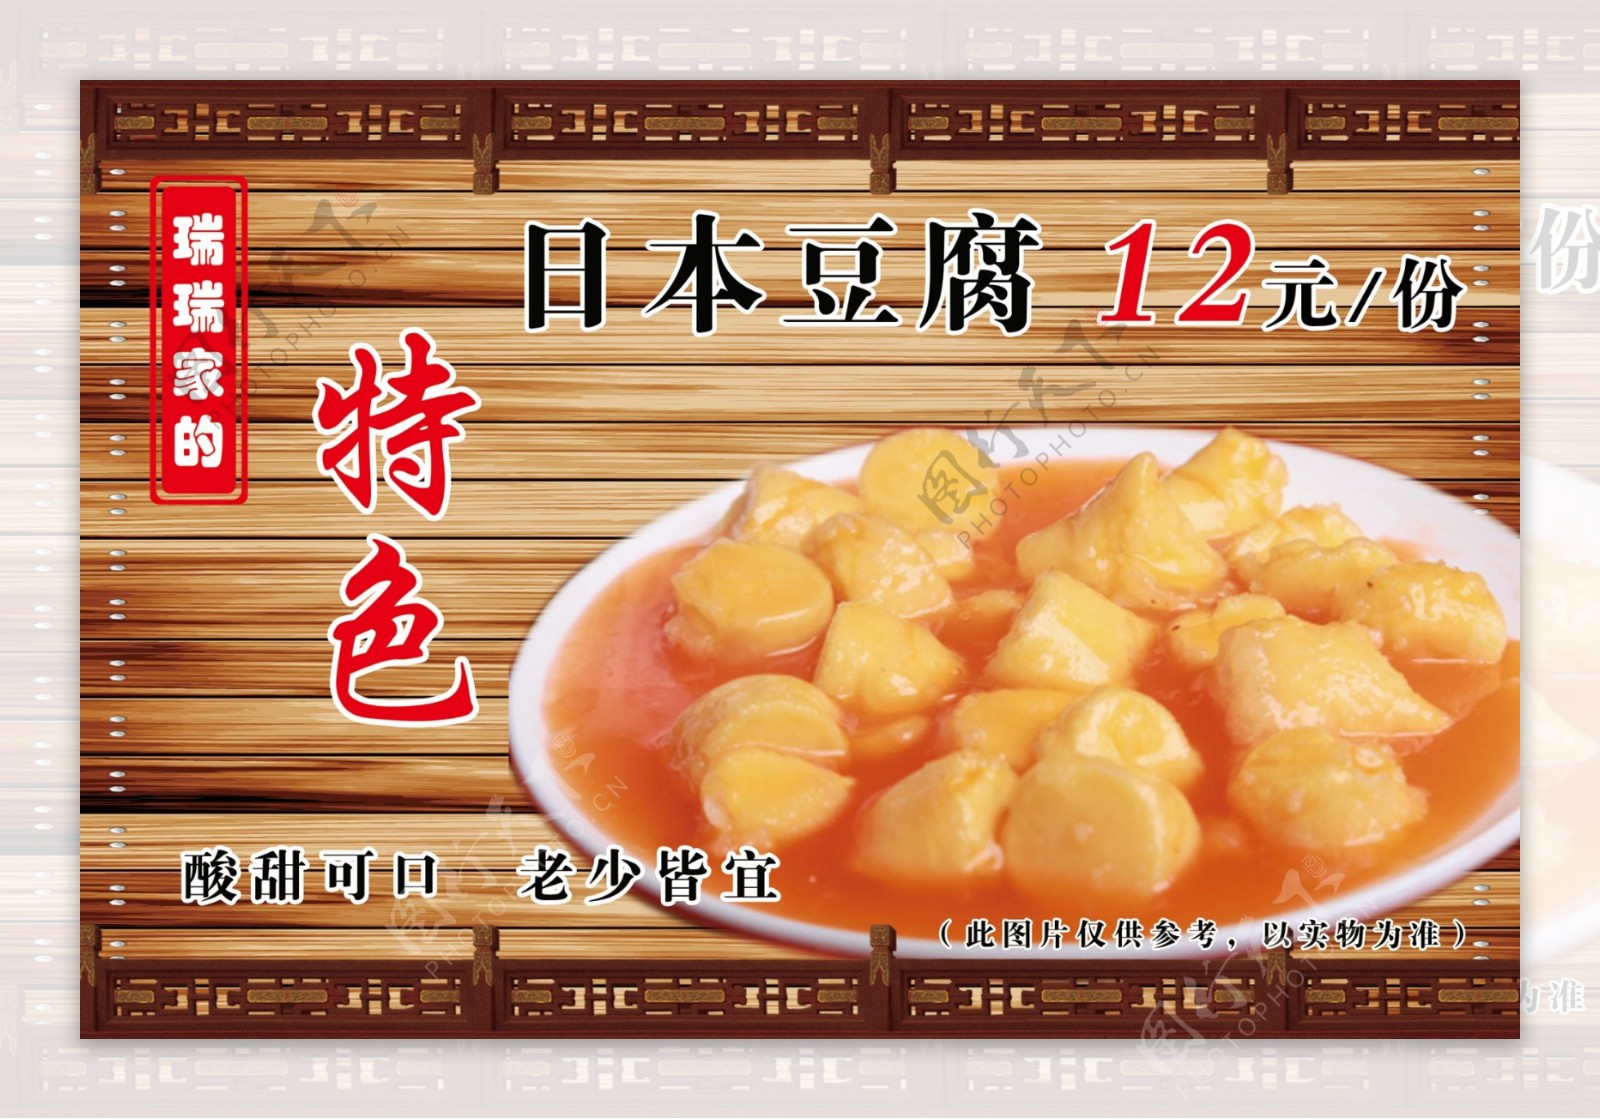 【官方】日本国家旅游局(中国)｜京都府 豆腐衣~从薄到可以用肉眼看透的豆腐衣中，品味累积的历史与职人的用心。